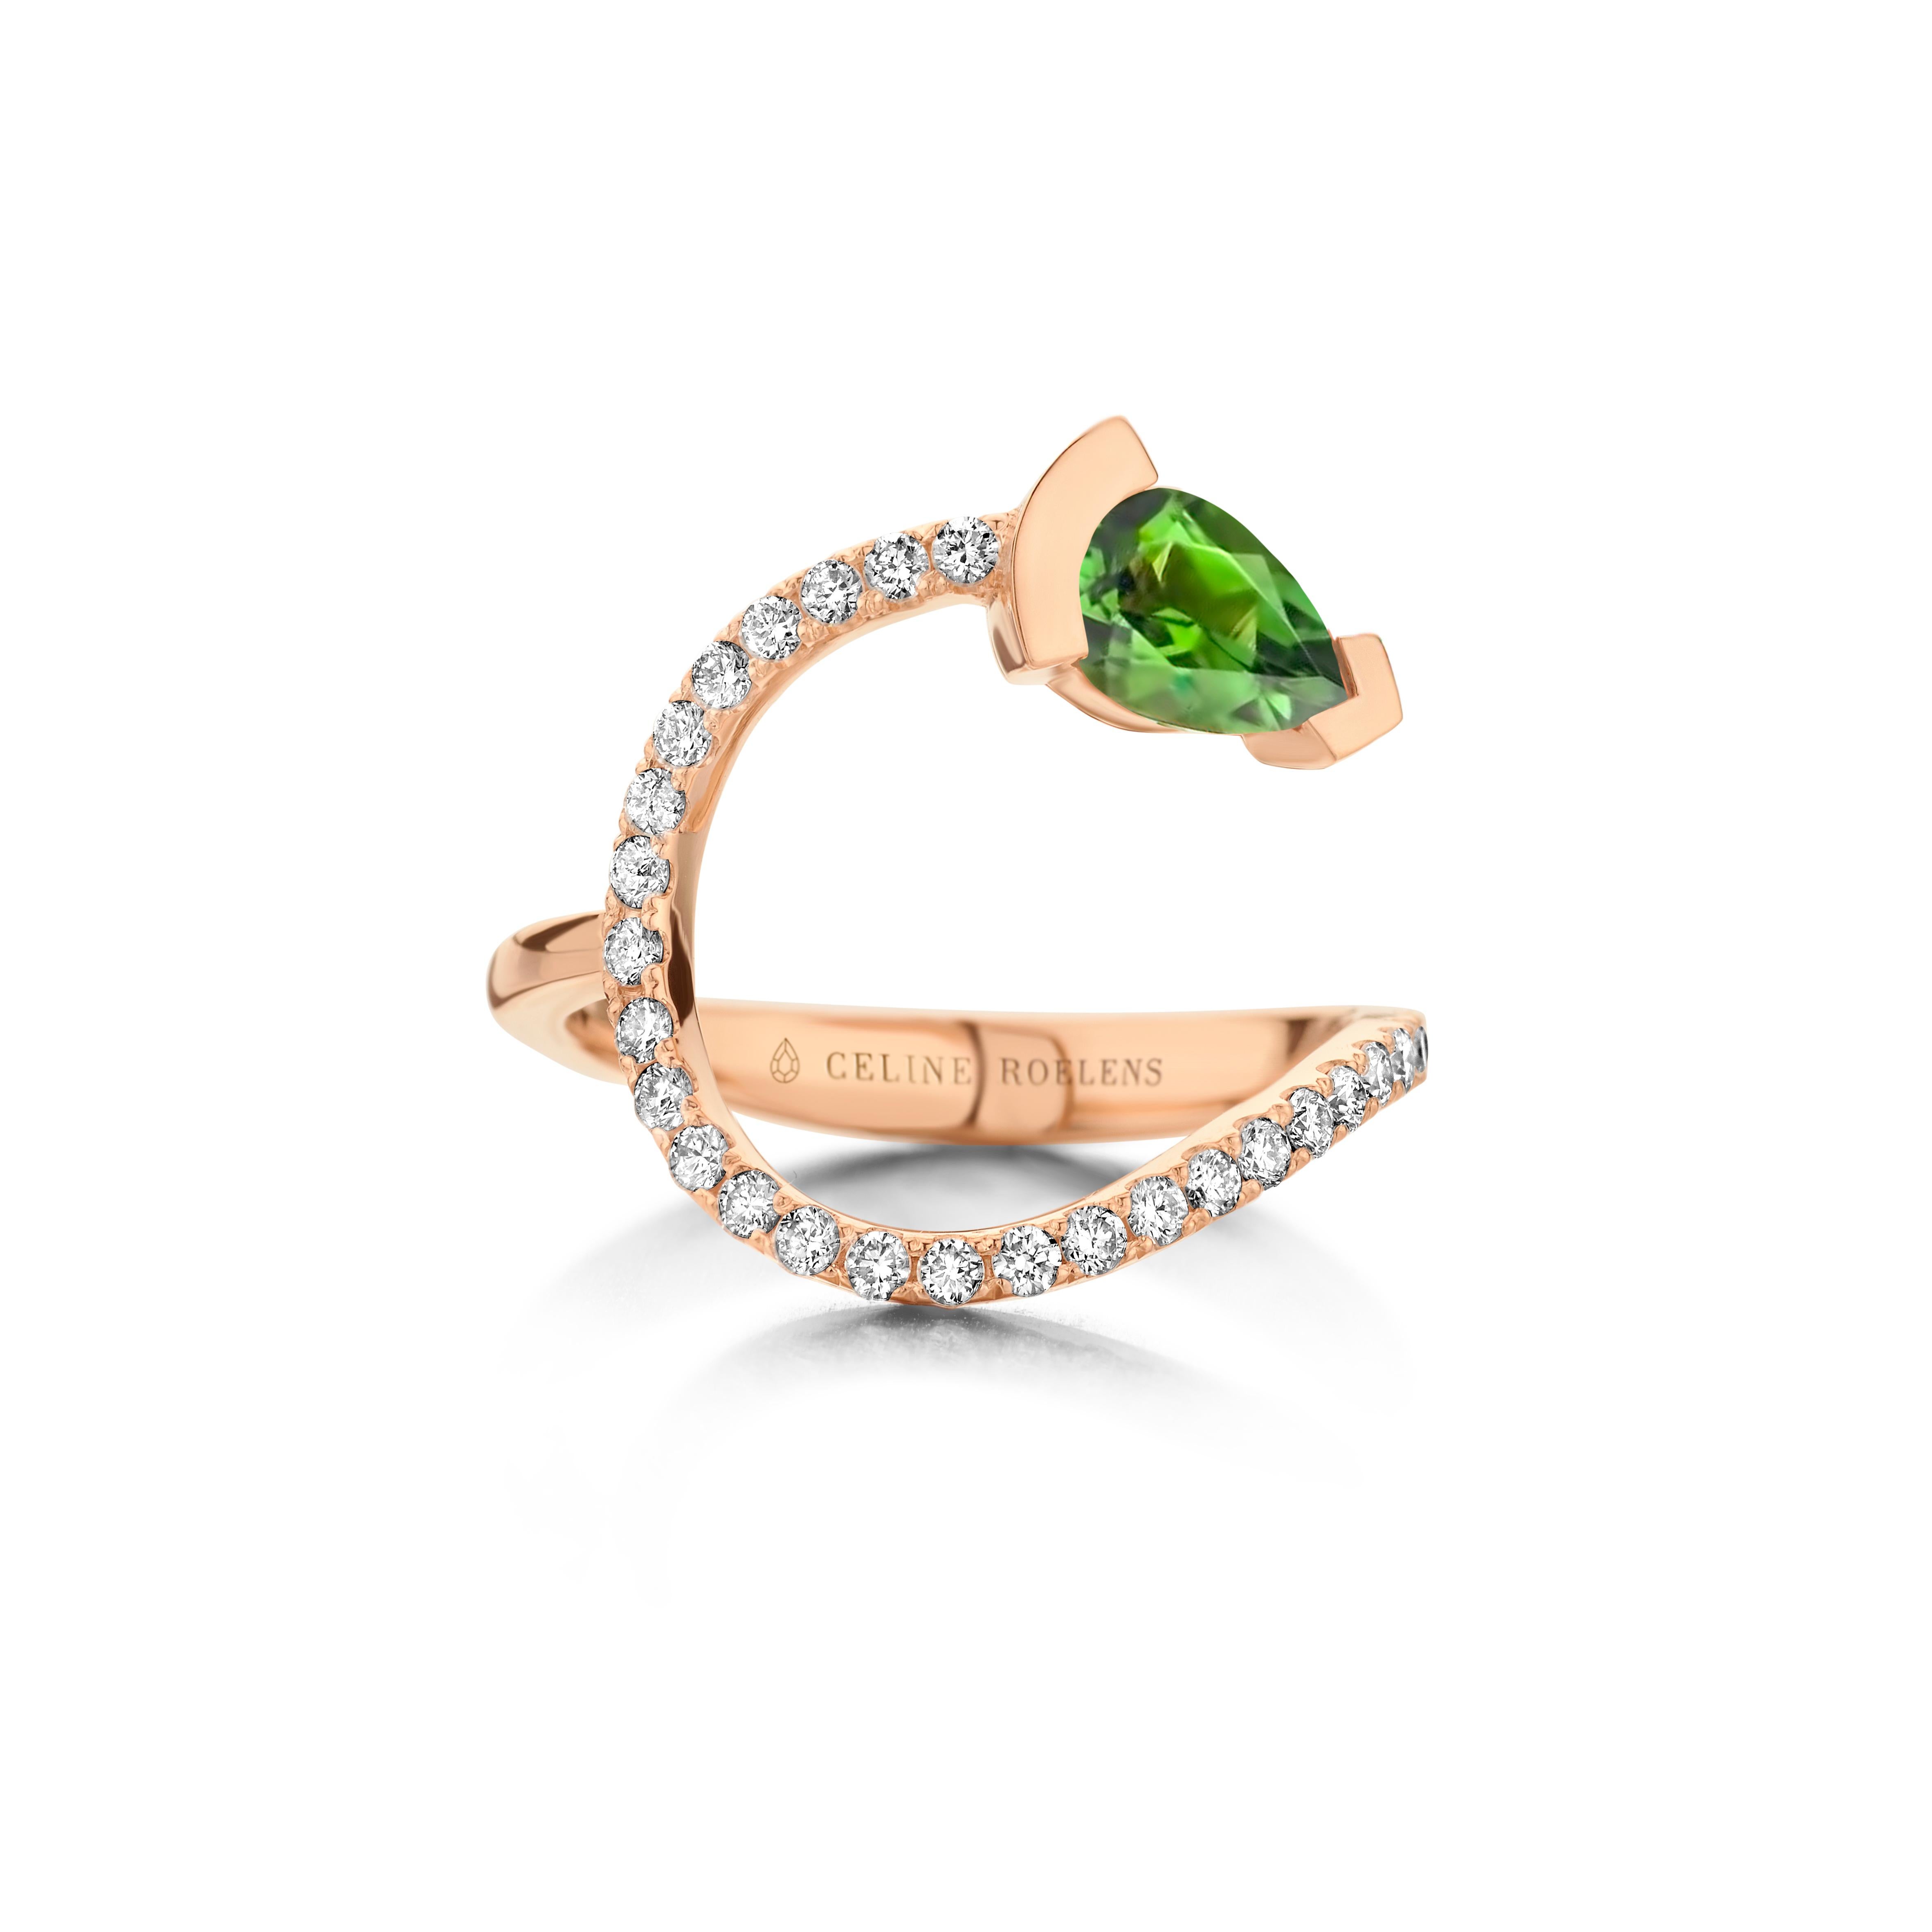 ADELINE geschwungener Ring aus 18 Karat Gelbgold, besetzt mit einem birnenförmigen grünen Turmalin und 0,33 Karat Diamanten mit weißem Brillantschliff - Qualität VS F.